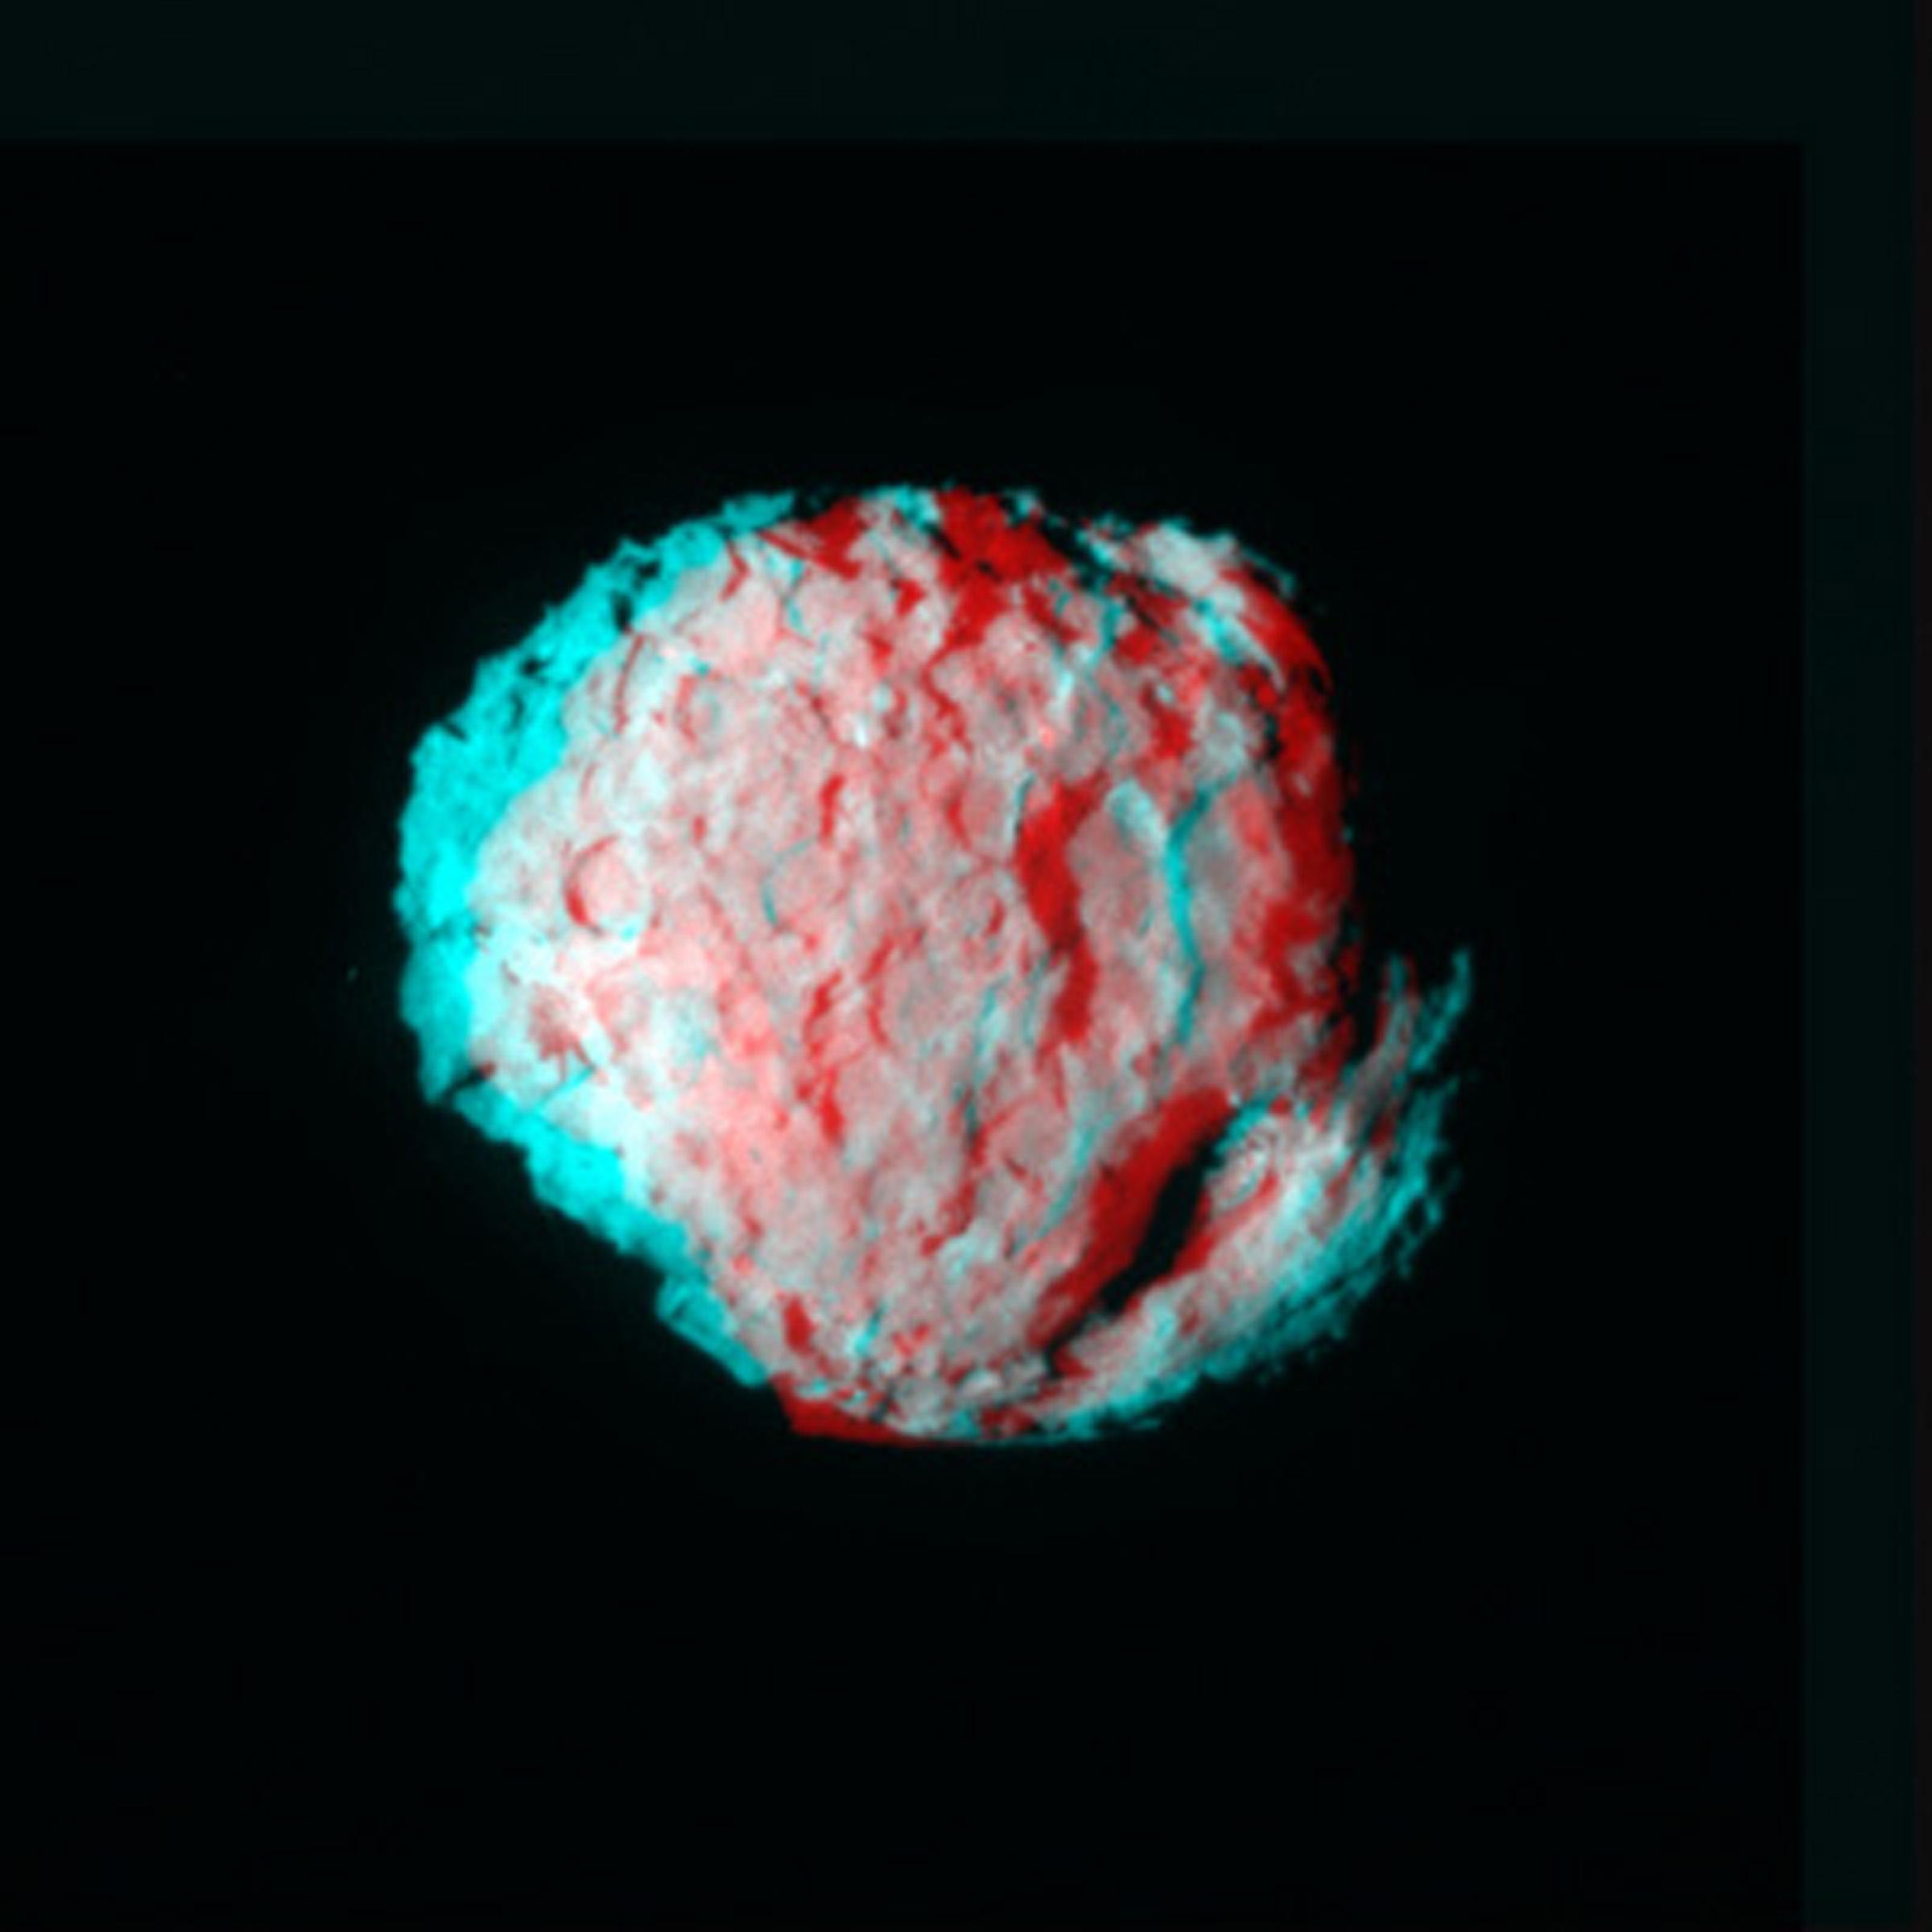 Anaglifo tridimensionale della cometa Wild 2 (crediti: NASA/JPL)